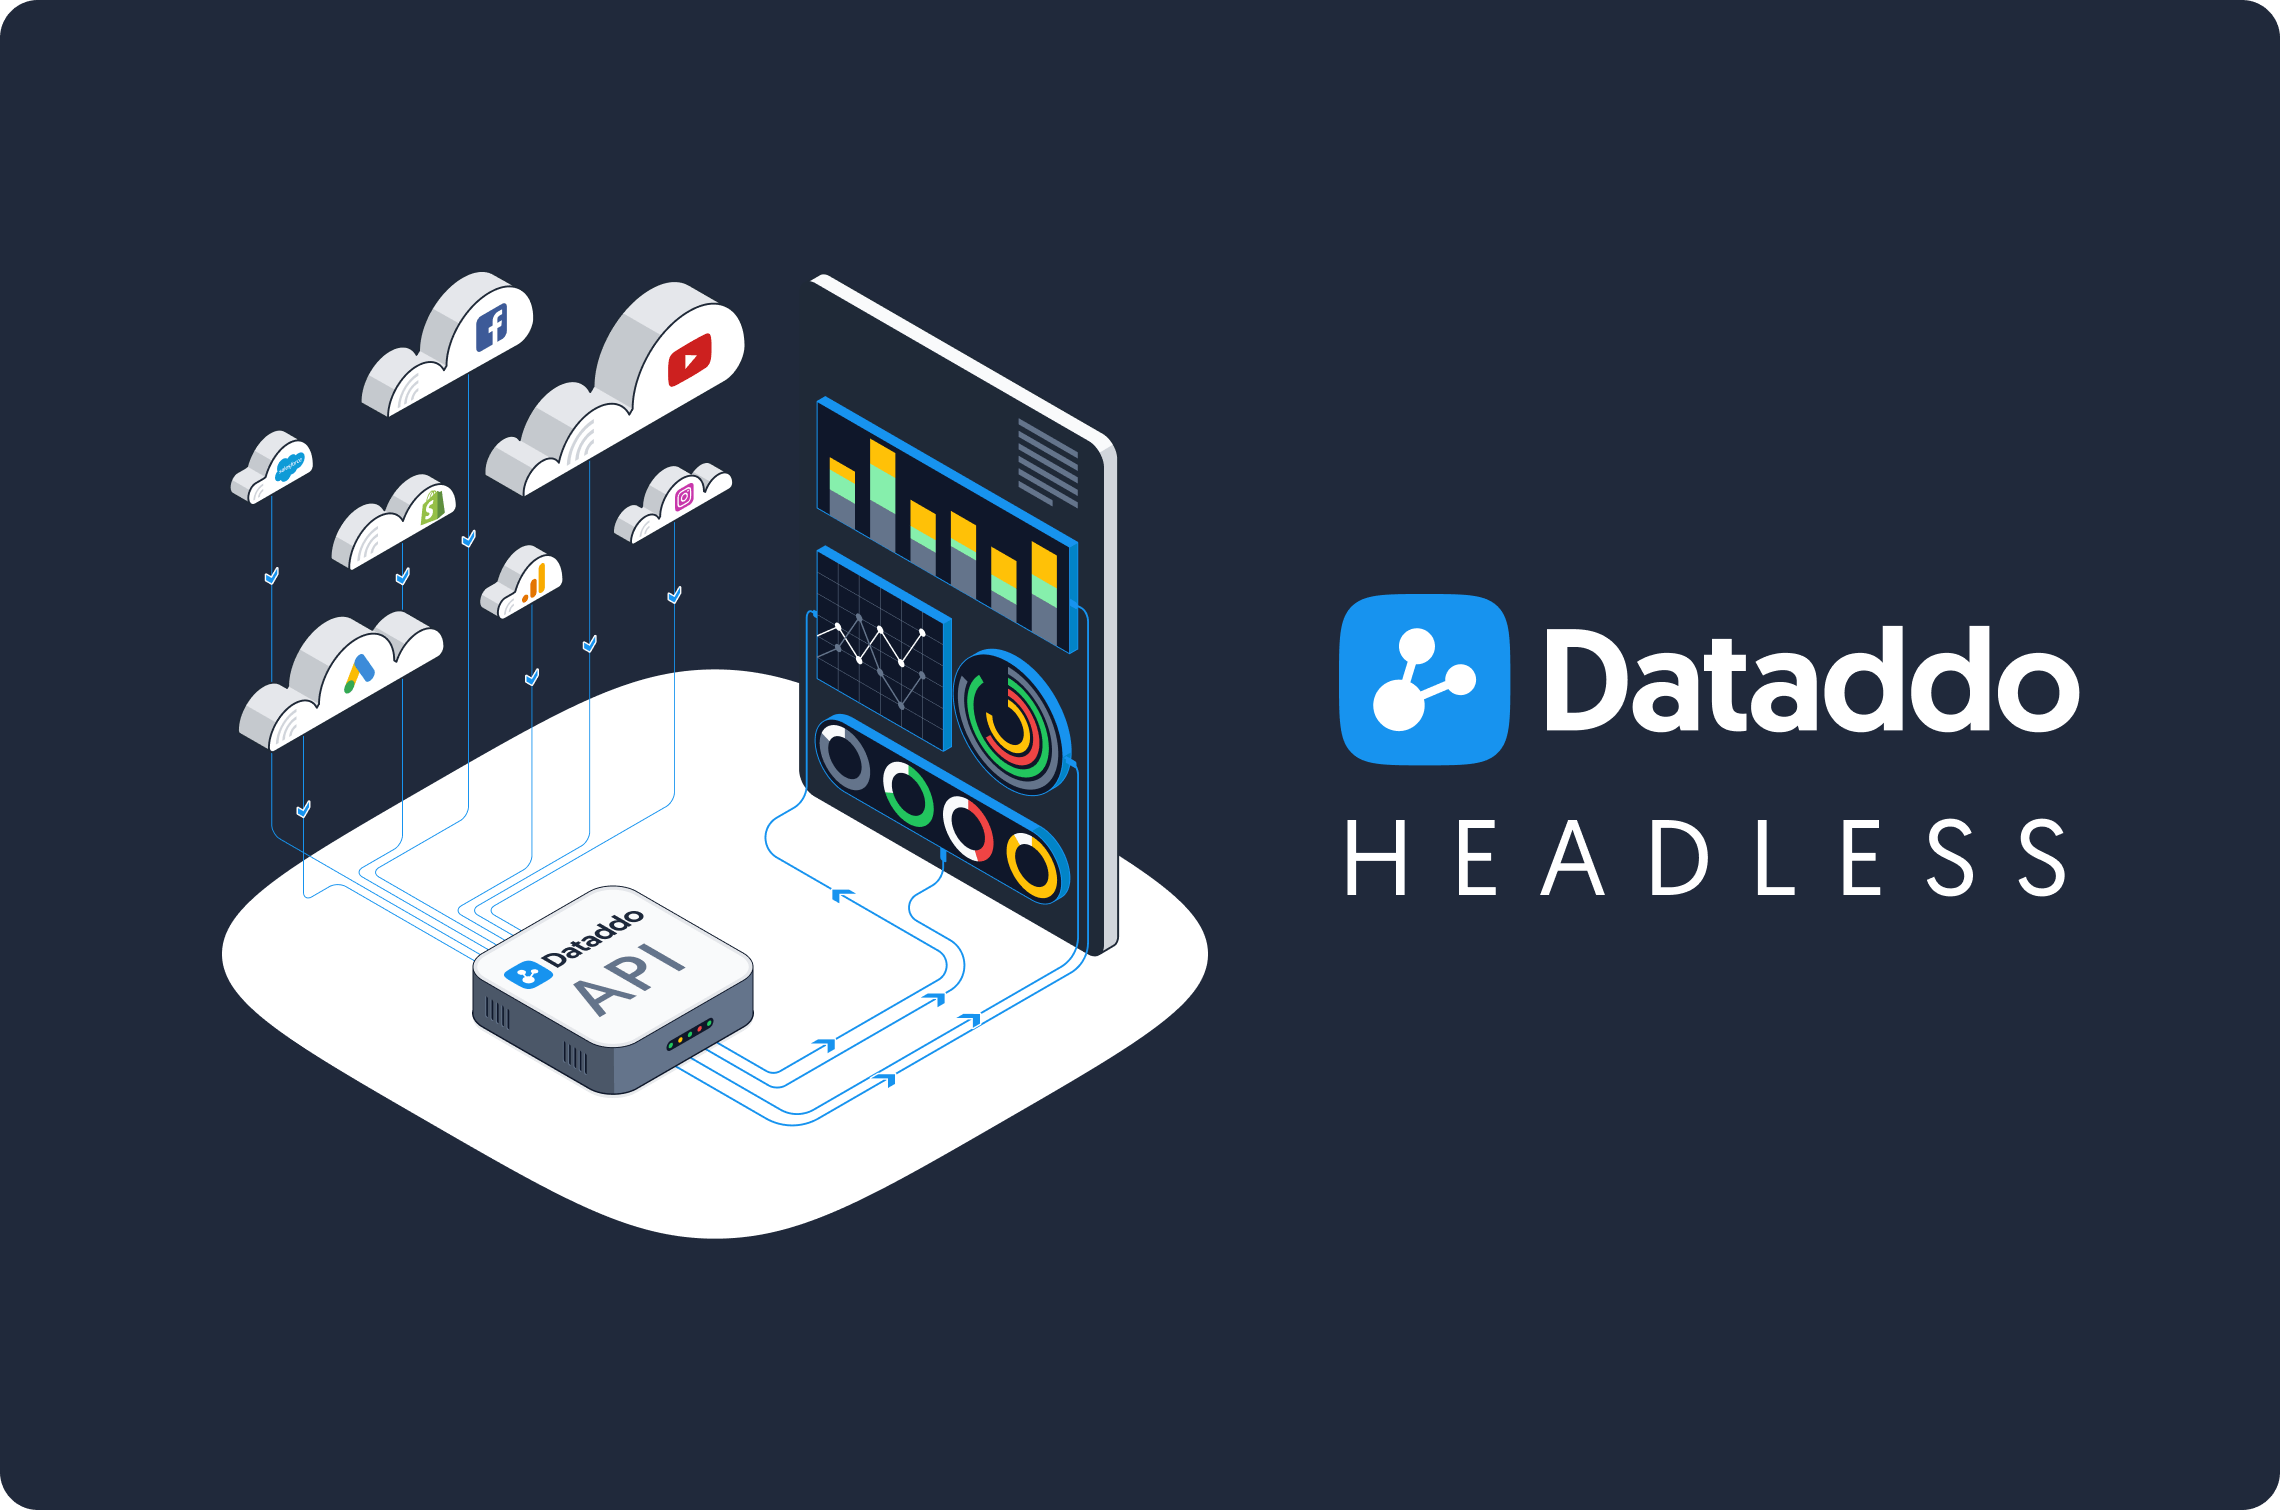 Introducing Dataddo Headless—A Headless Data Integration Platform